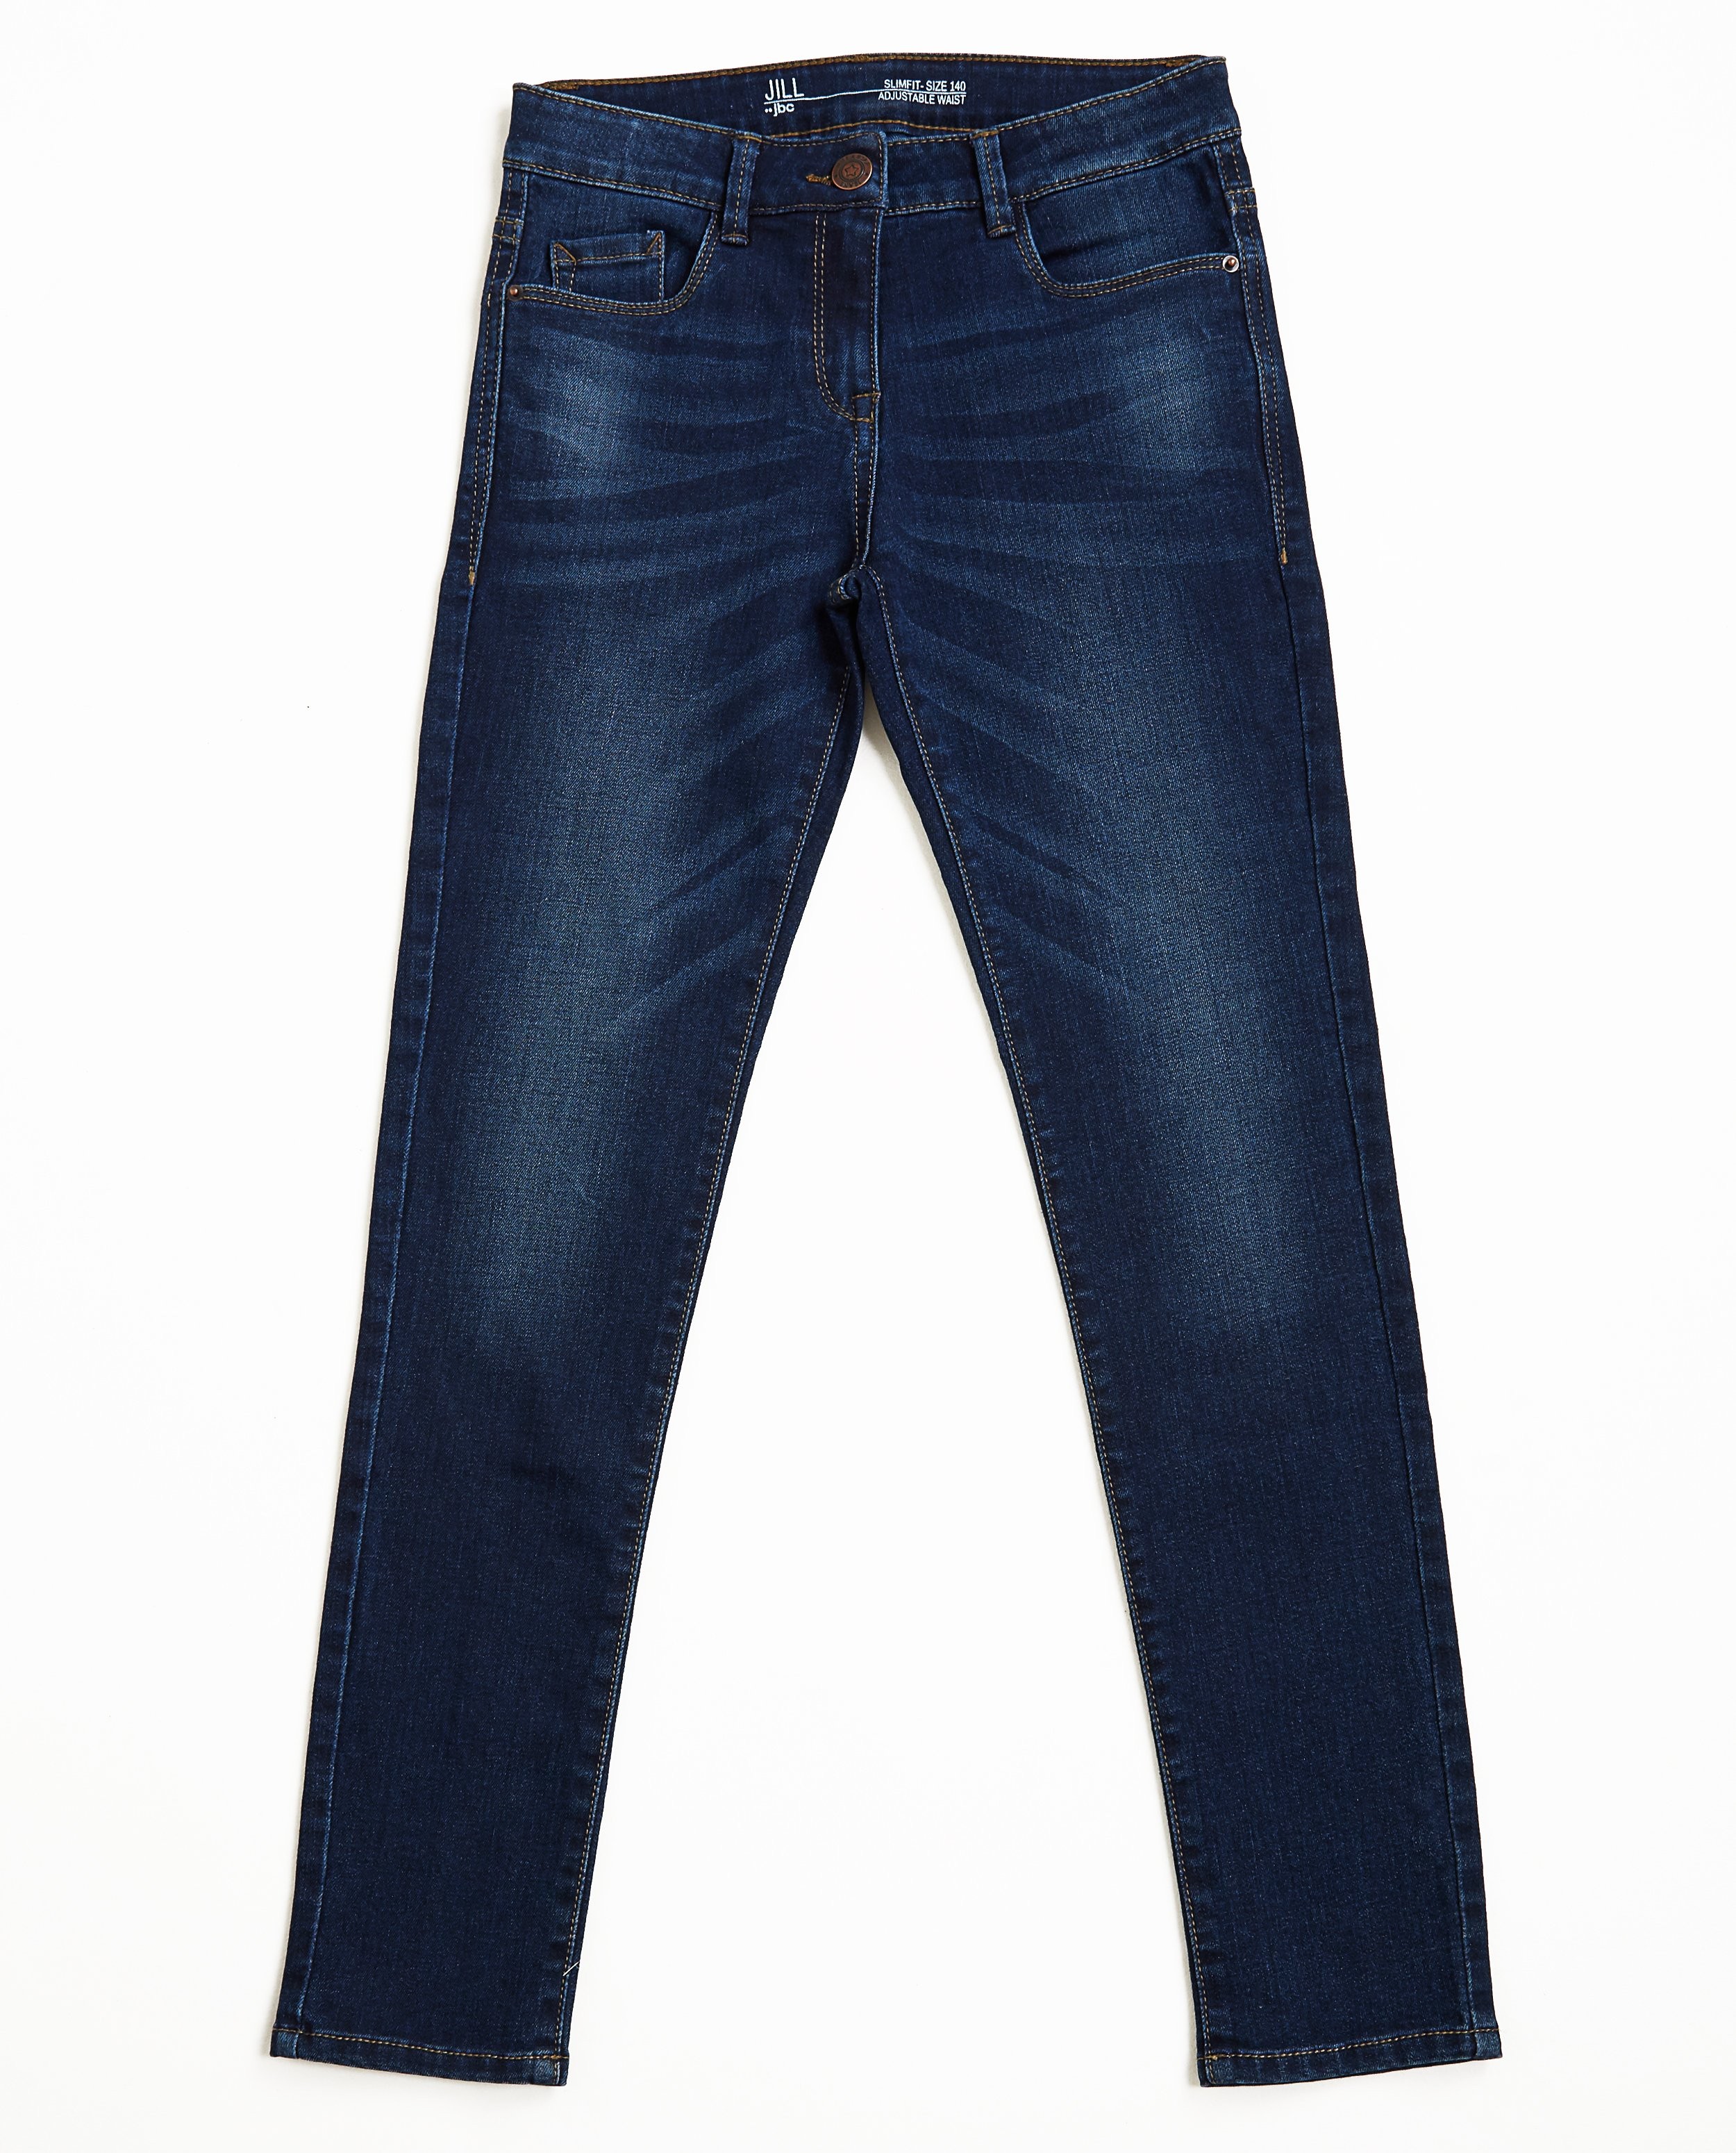 Jeans slim bleu foncé - légèrement délavé - JBC